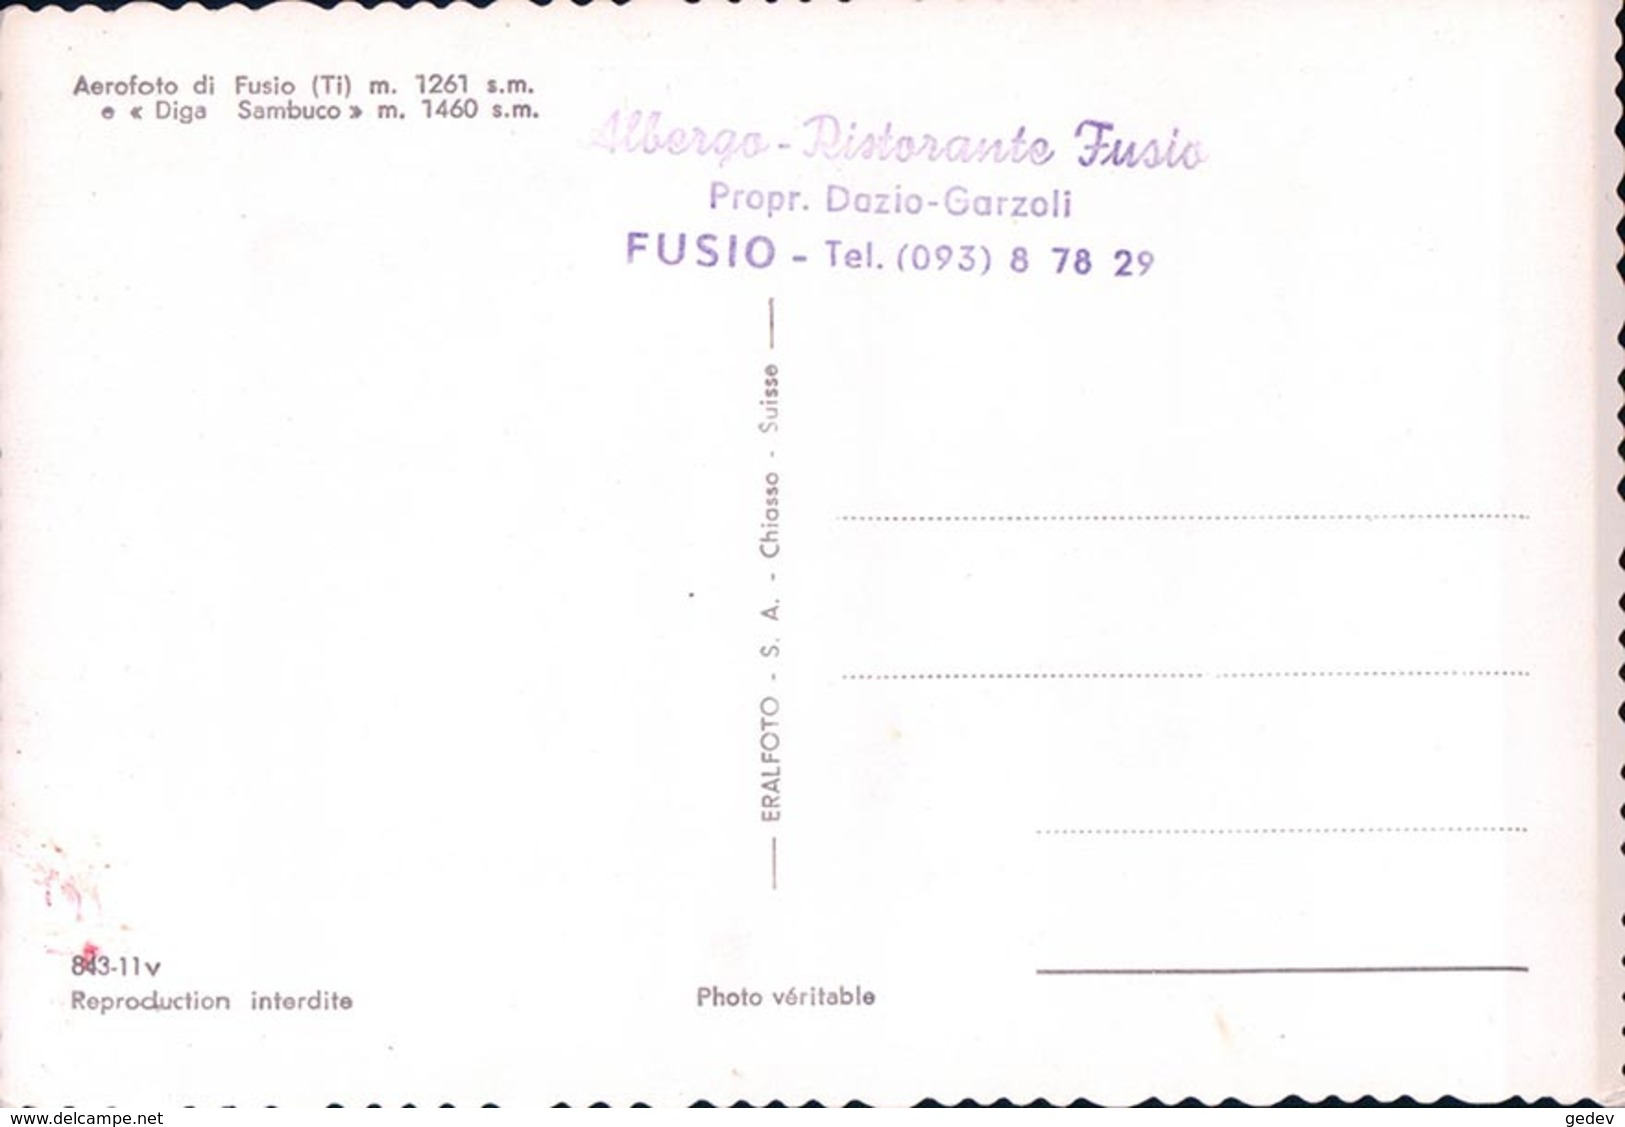 Fusio, Diga Sambuco, Aerofoto + Tampon "Albergo Ristorante Fusio Propr. Dazio-Garzoli" (843 11) 10x15 - Fusio